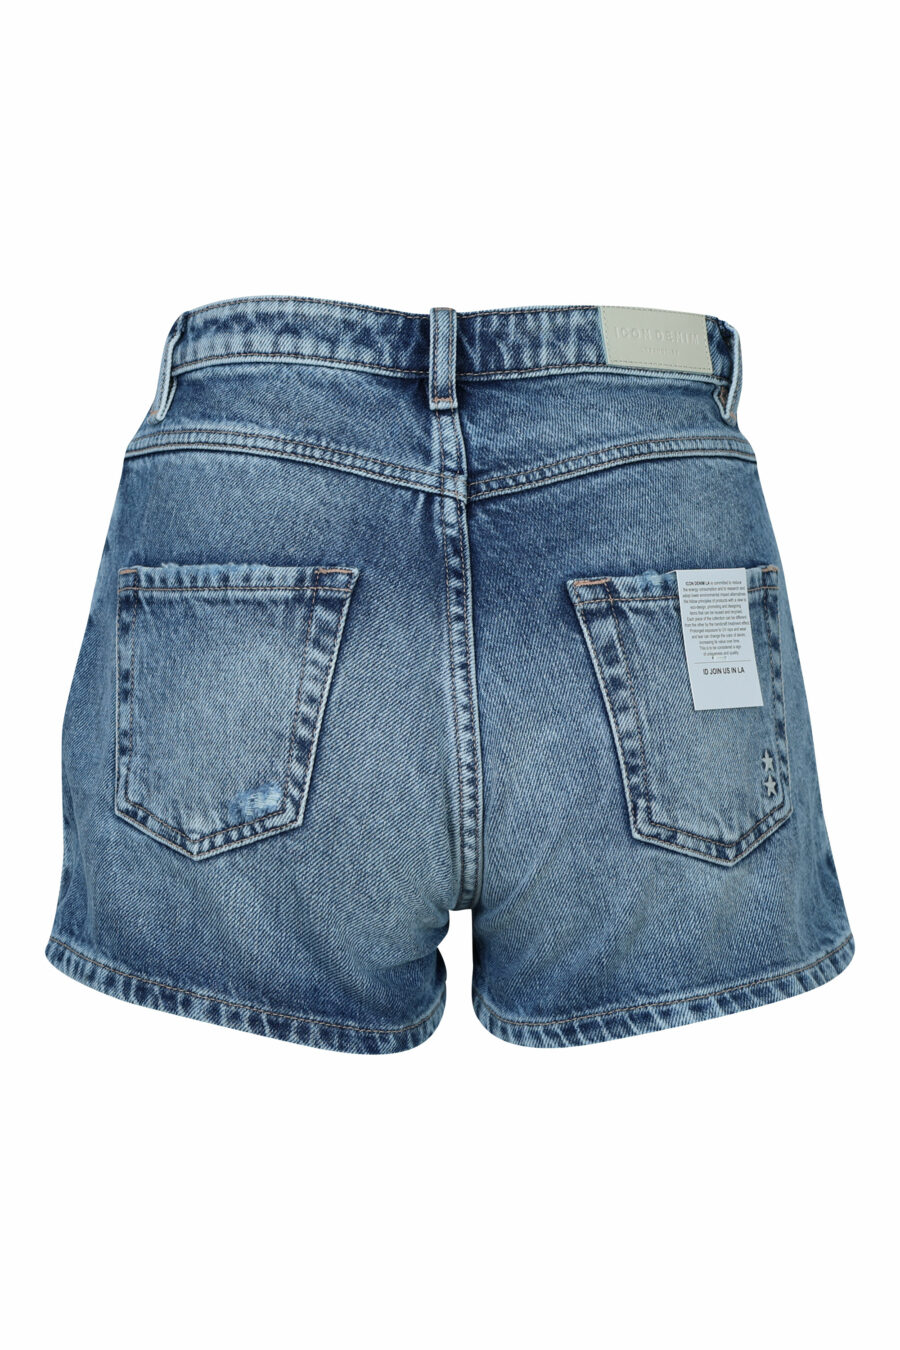 Blue denim shorts "Sam" - 8059772787604 1